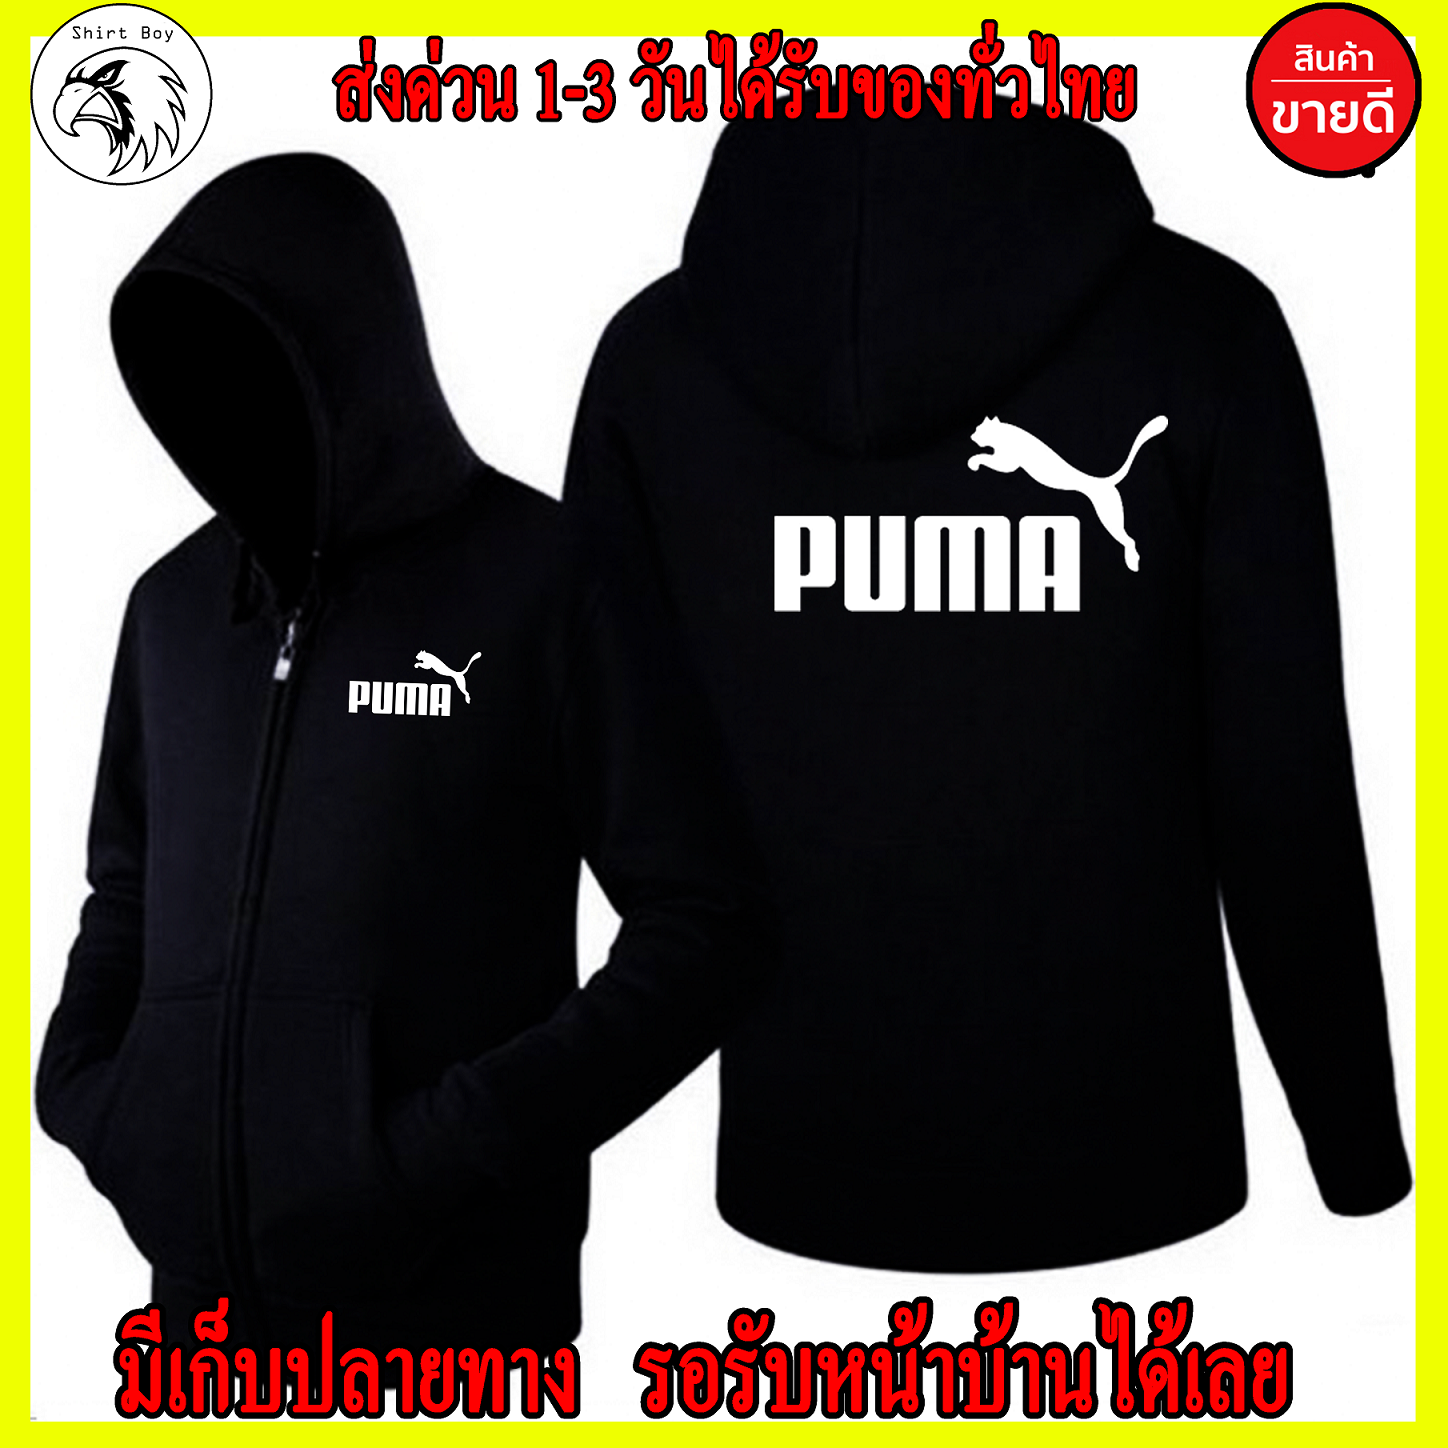 PUMA เสื้อฮู้ด Puma แบบซิปแบบสวม สกรีนแบบเฟล็ก PU สวยสดไม่แตกไม่ลอก ส่งด่วนทั่วไทย ถูกที่สุด